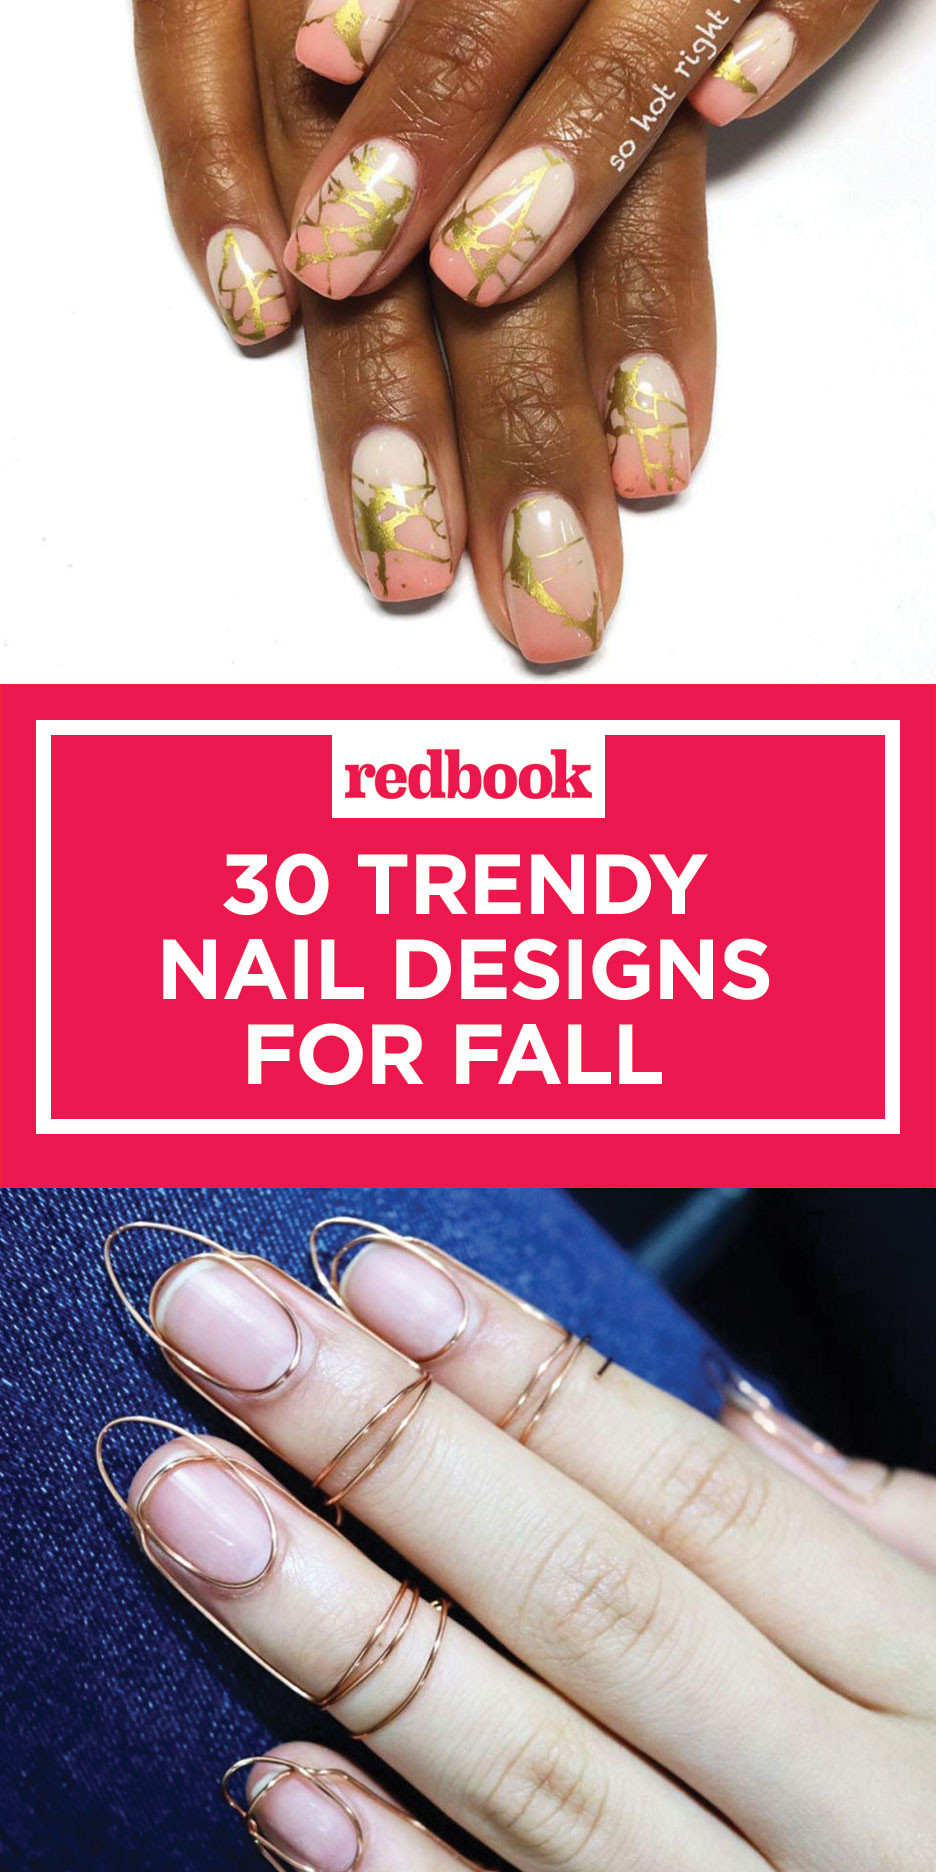 Nail Designs For Fall Season
 34 Fall Nail Designs for 2017 Cute Autumn Manicure Ideas